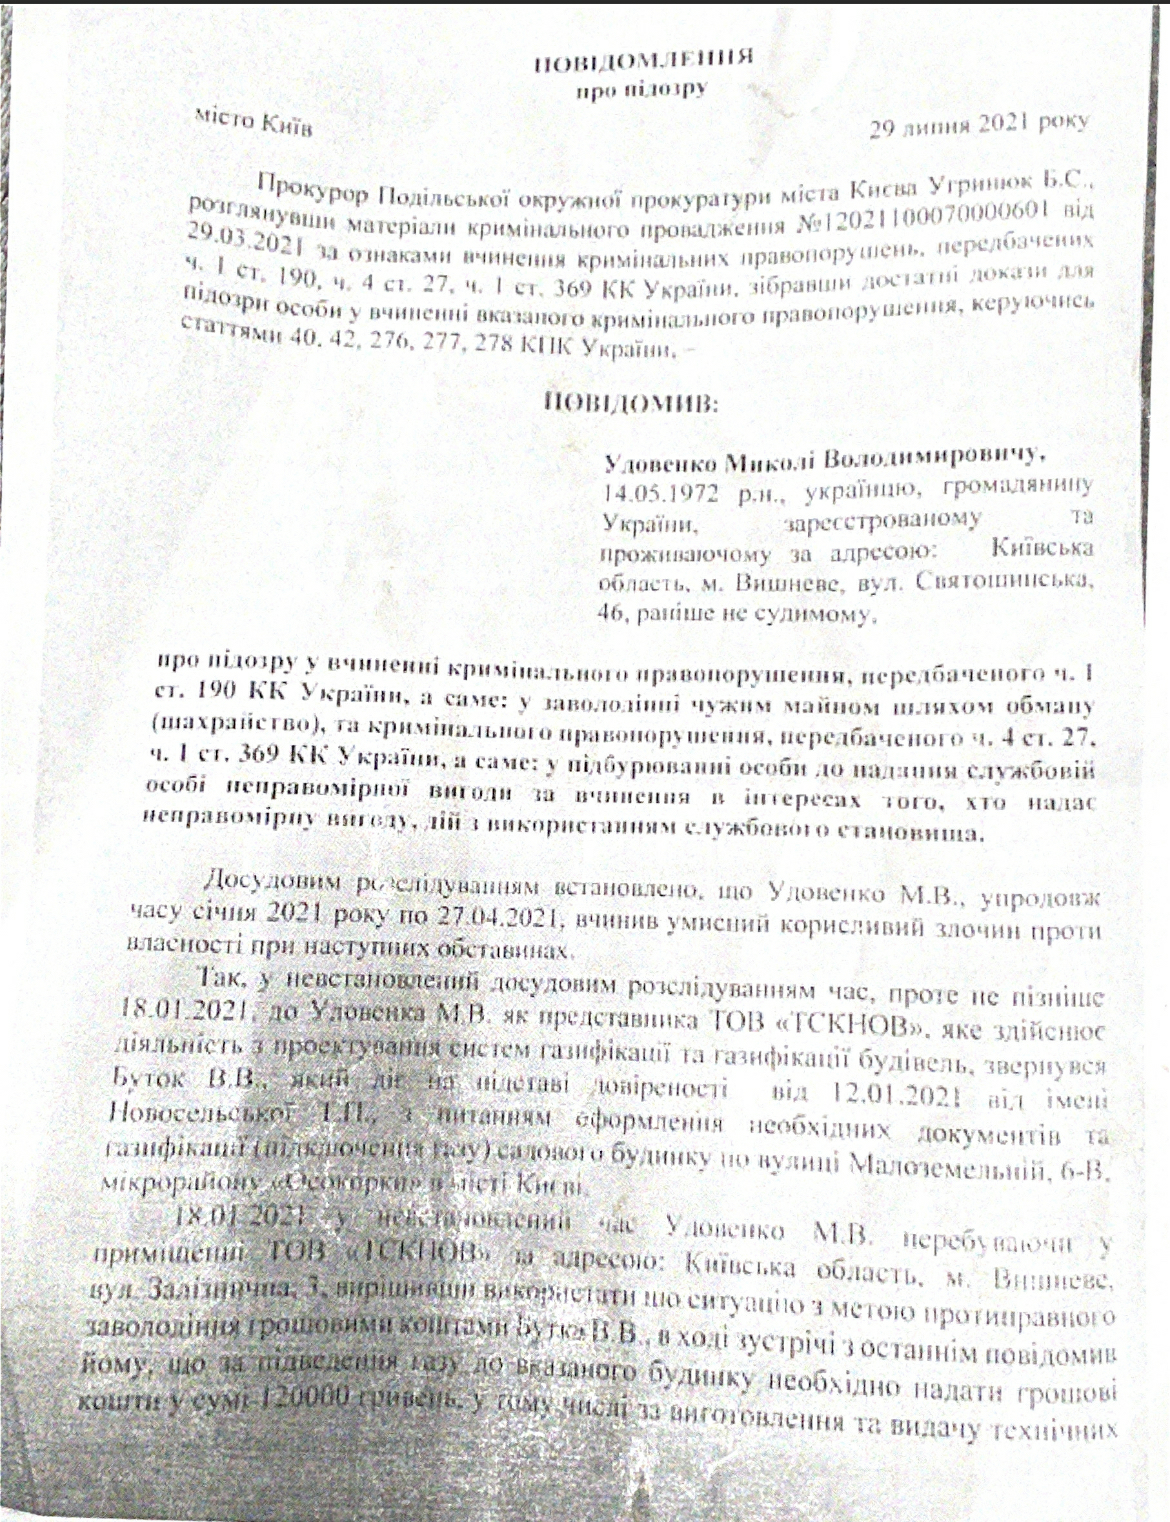 Прокуратура Києва повідомила про підозру співробітнику компанії з проєктування систем газифікації - фото 2